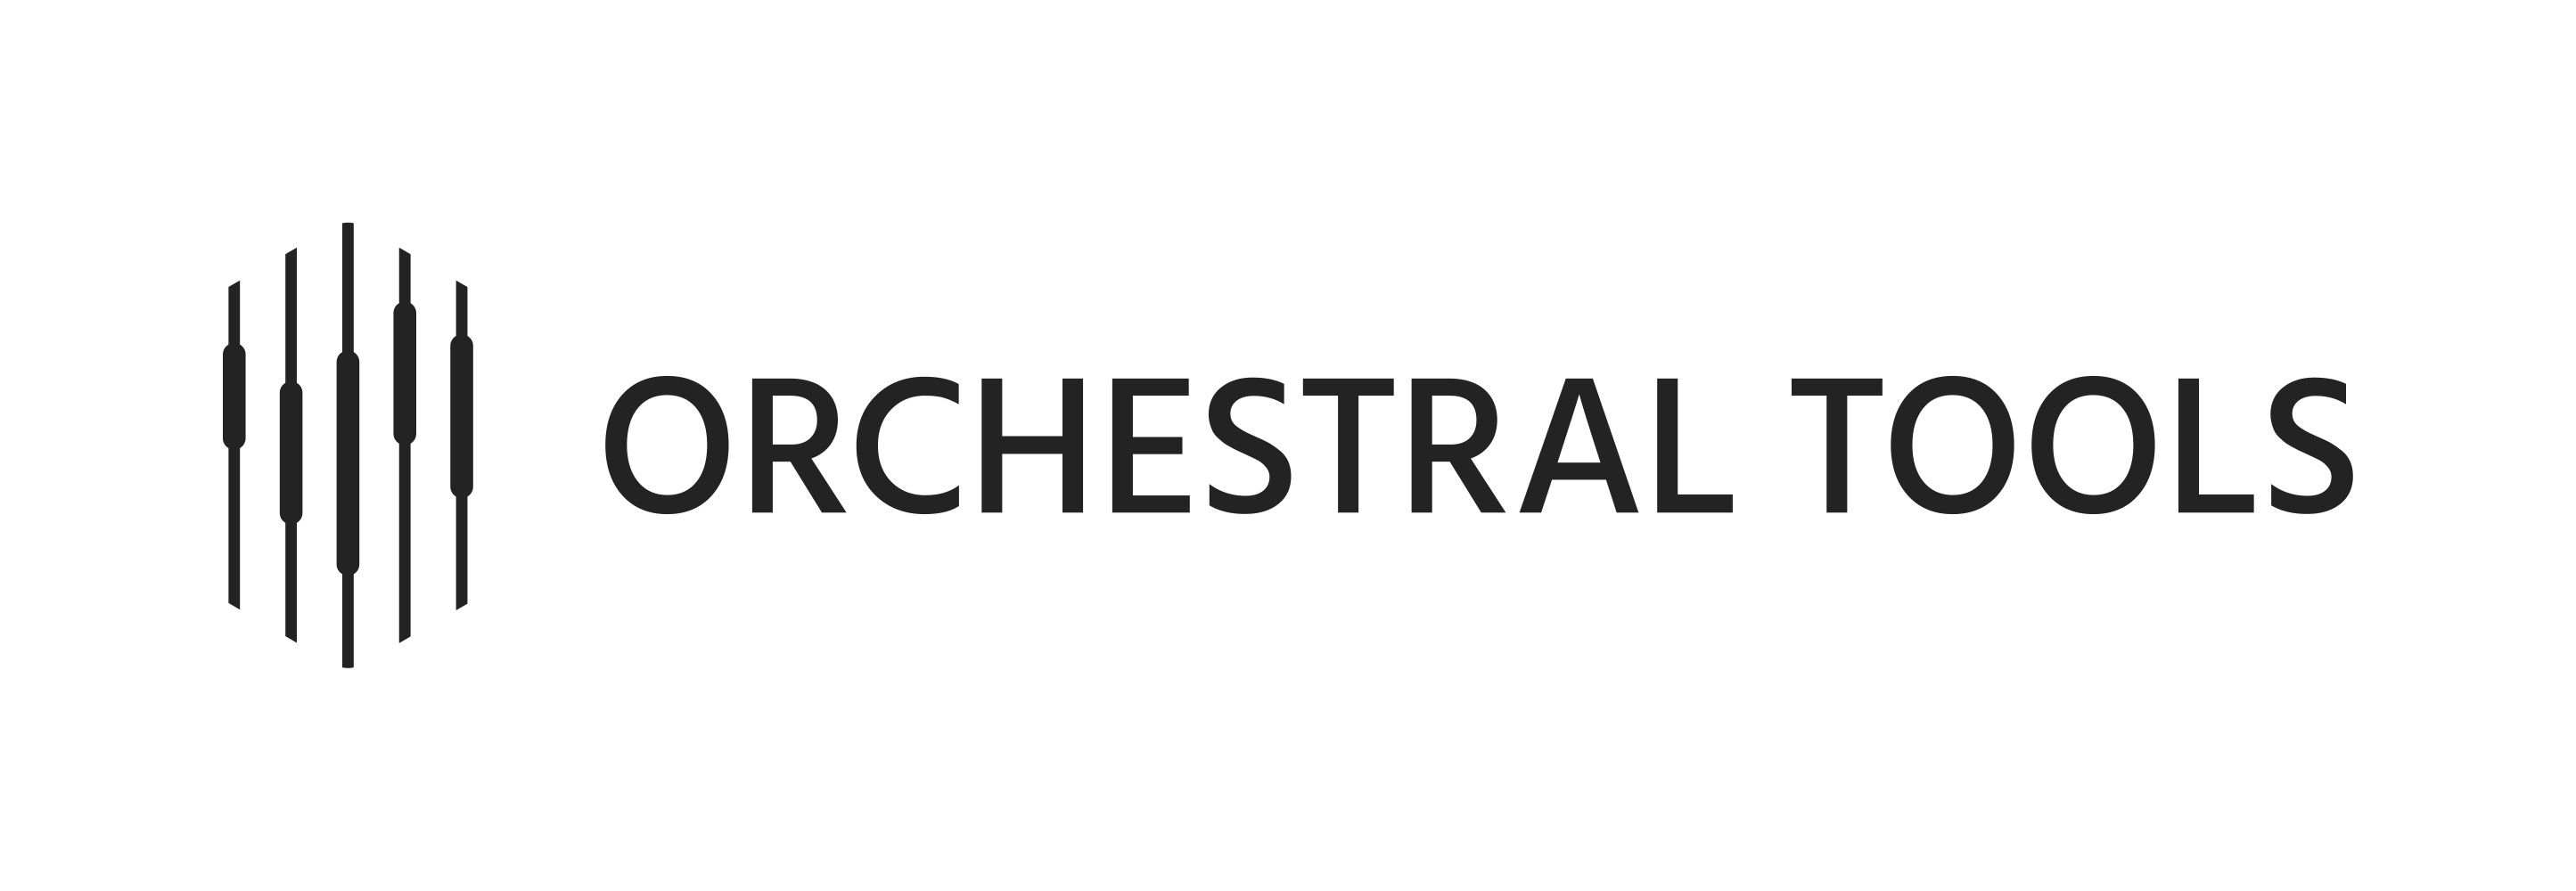 Orchestral Tools logo_XL